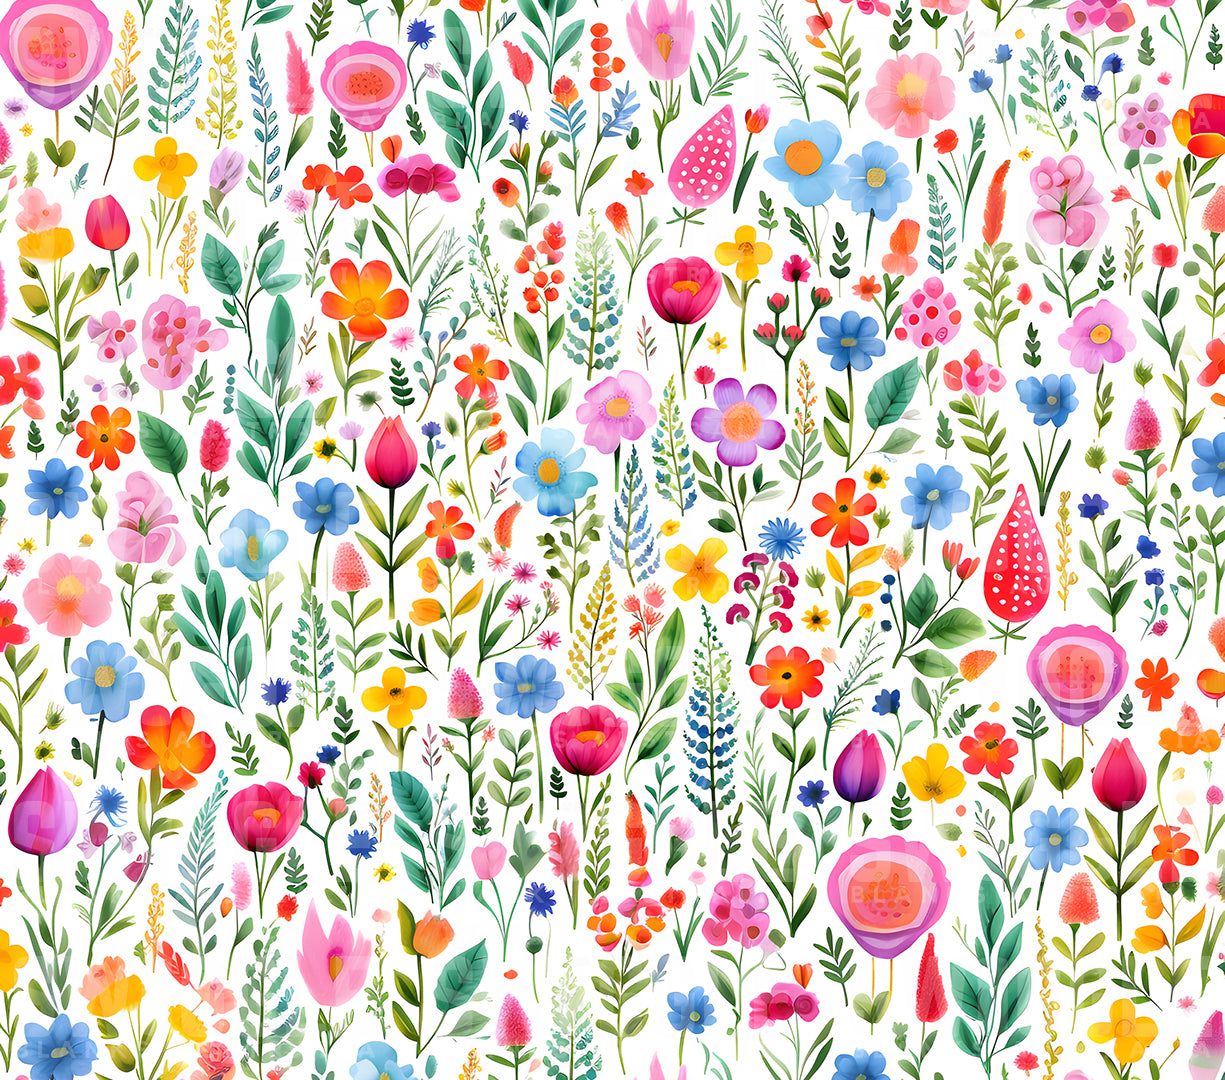 Field of Flowers Watercolour Kids #132 - Digital Download - Assorted Bottle Sizes